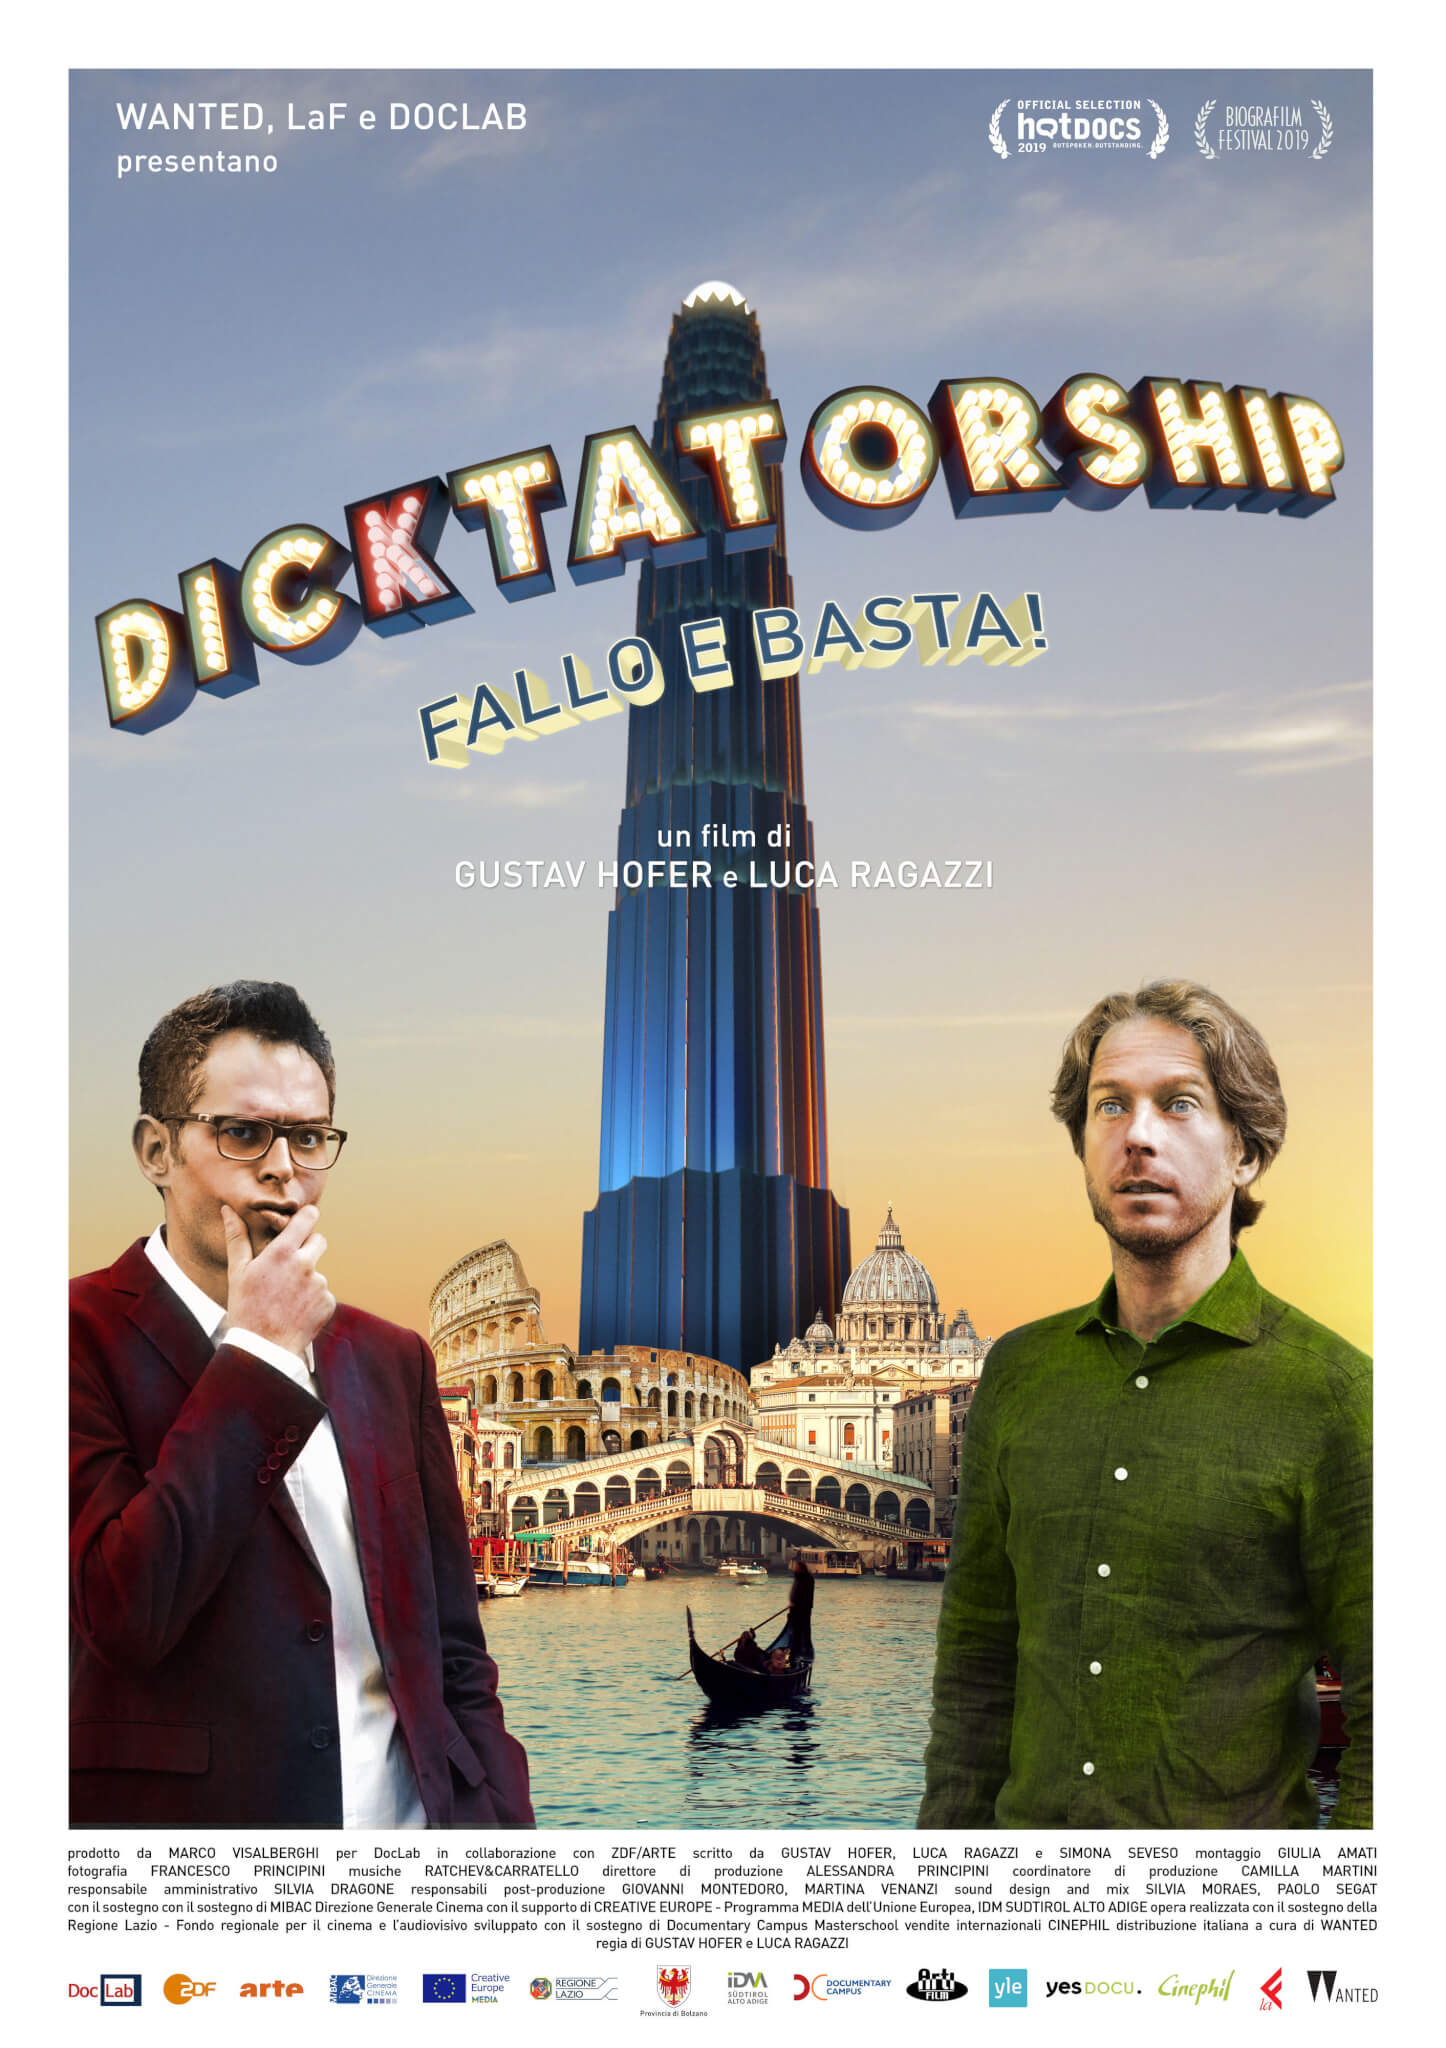 Dicktatorship - Fallo e Basta: poster e trailer del nuovo doc di Gustav Hofer e Luca Ragazzi - manifesto DICKTATORSHIP - Gay.it